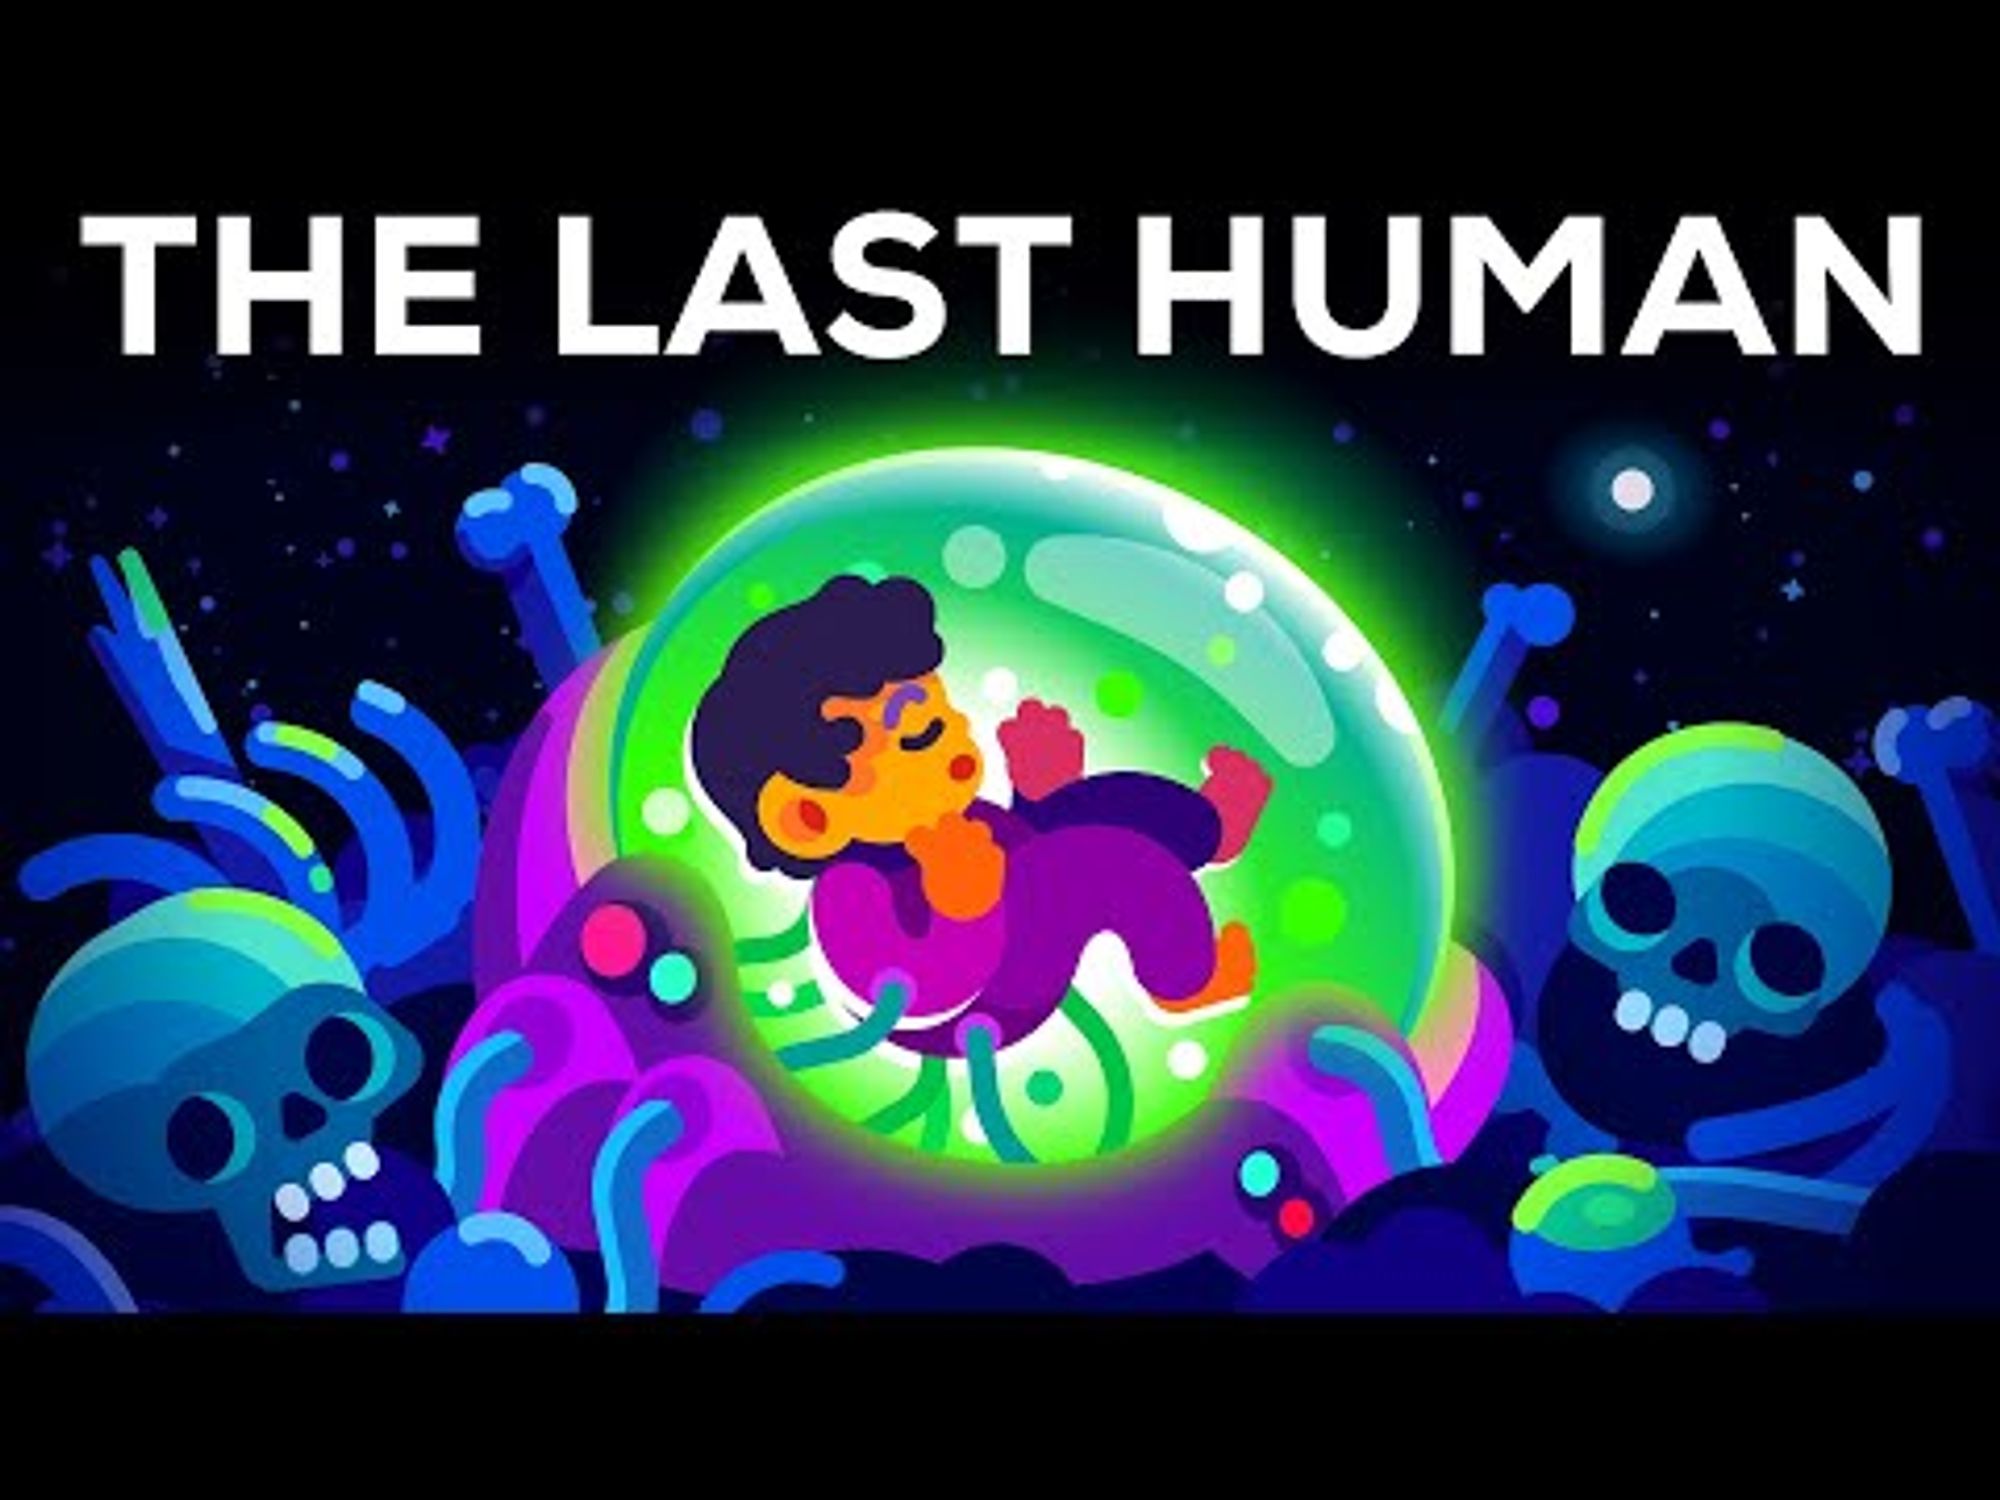 The Last Human - A Glimpse Into The Far Future